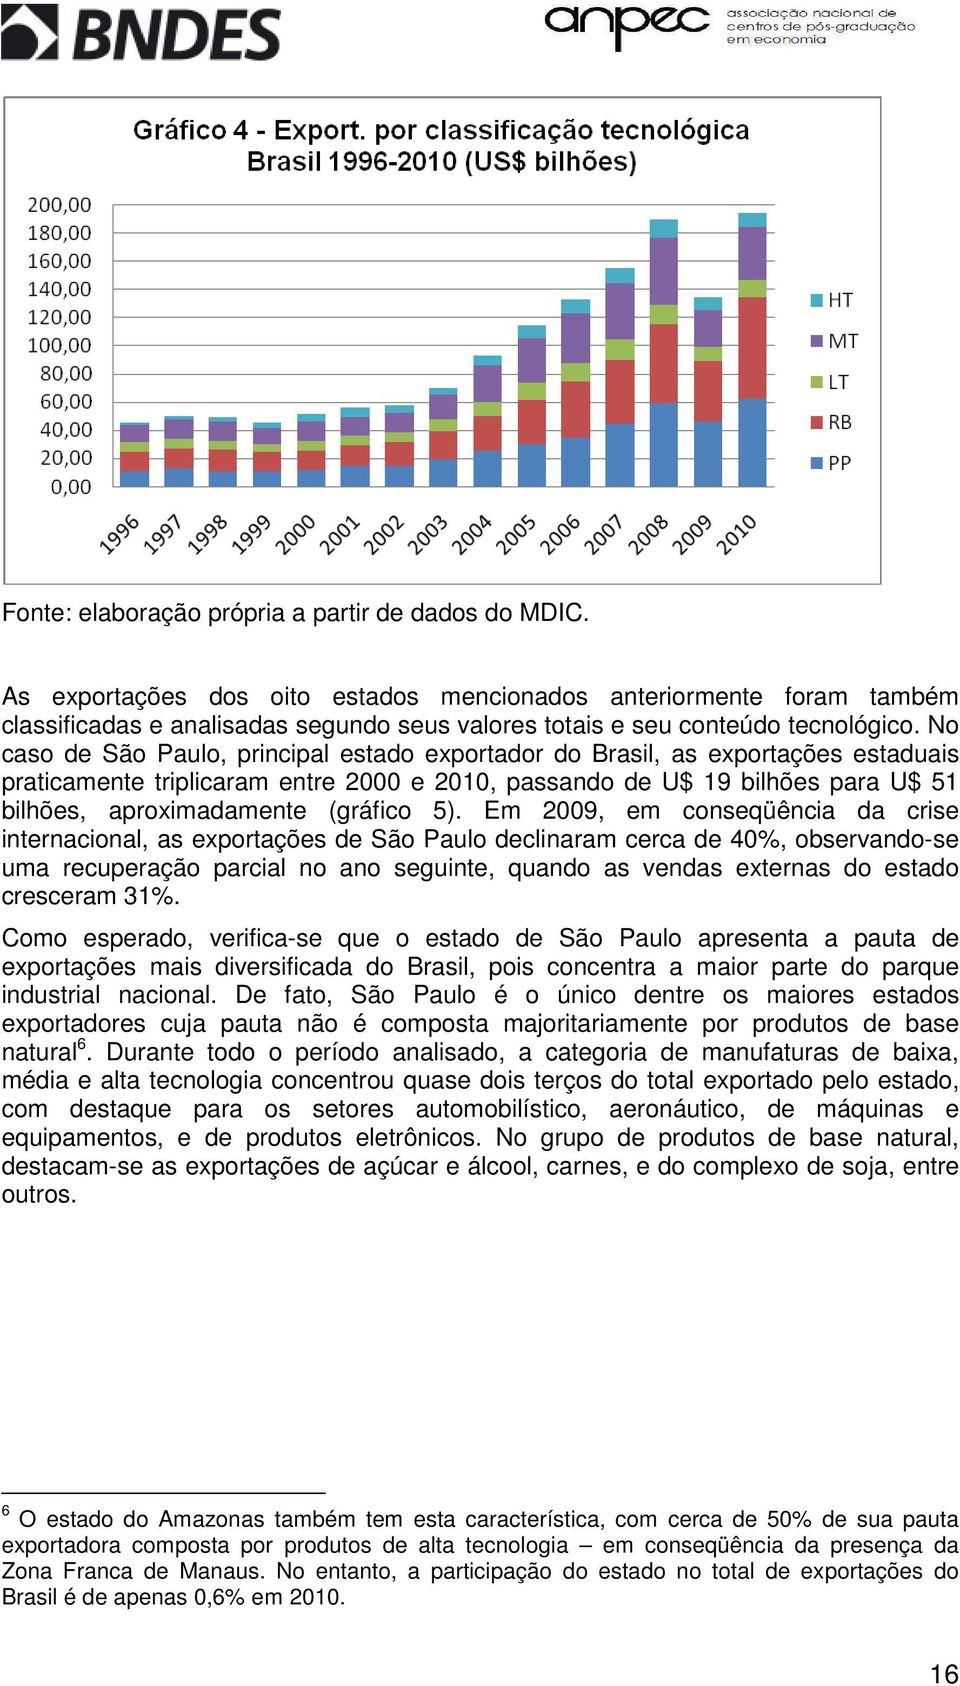 No caso de São Paulo, principal estado exportador do Brasil, as exportações estaduais praticamente triplicaram entre 2000 e 2010, passando de U$ 19 bilhões para U$ 51 bilhões, aproximadamente